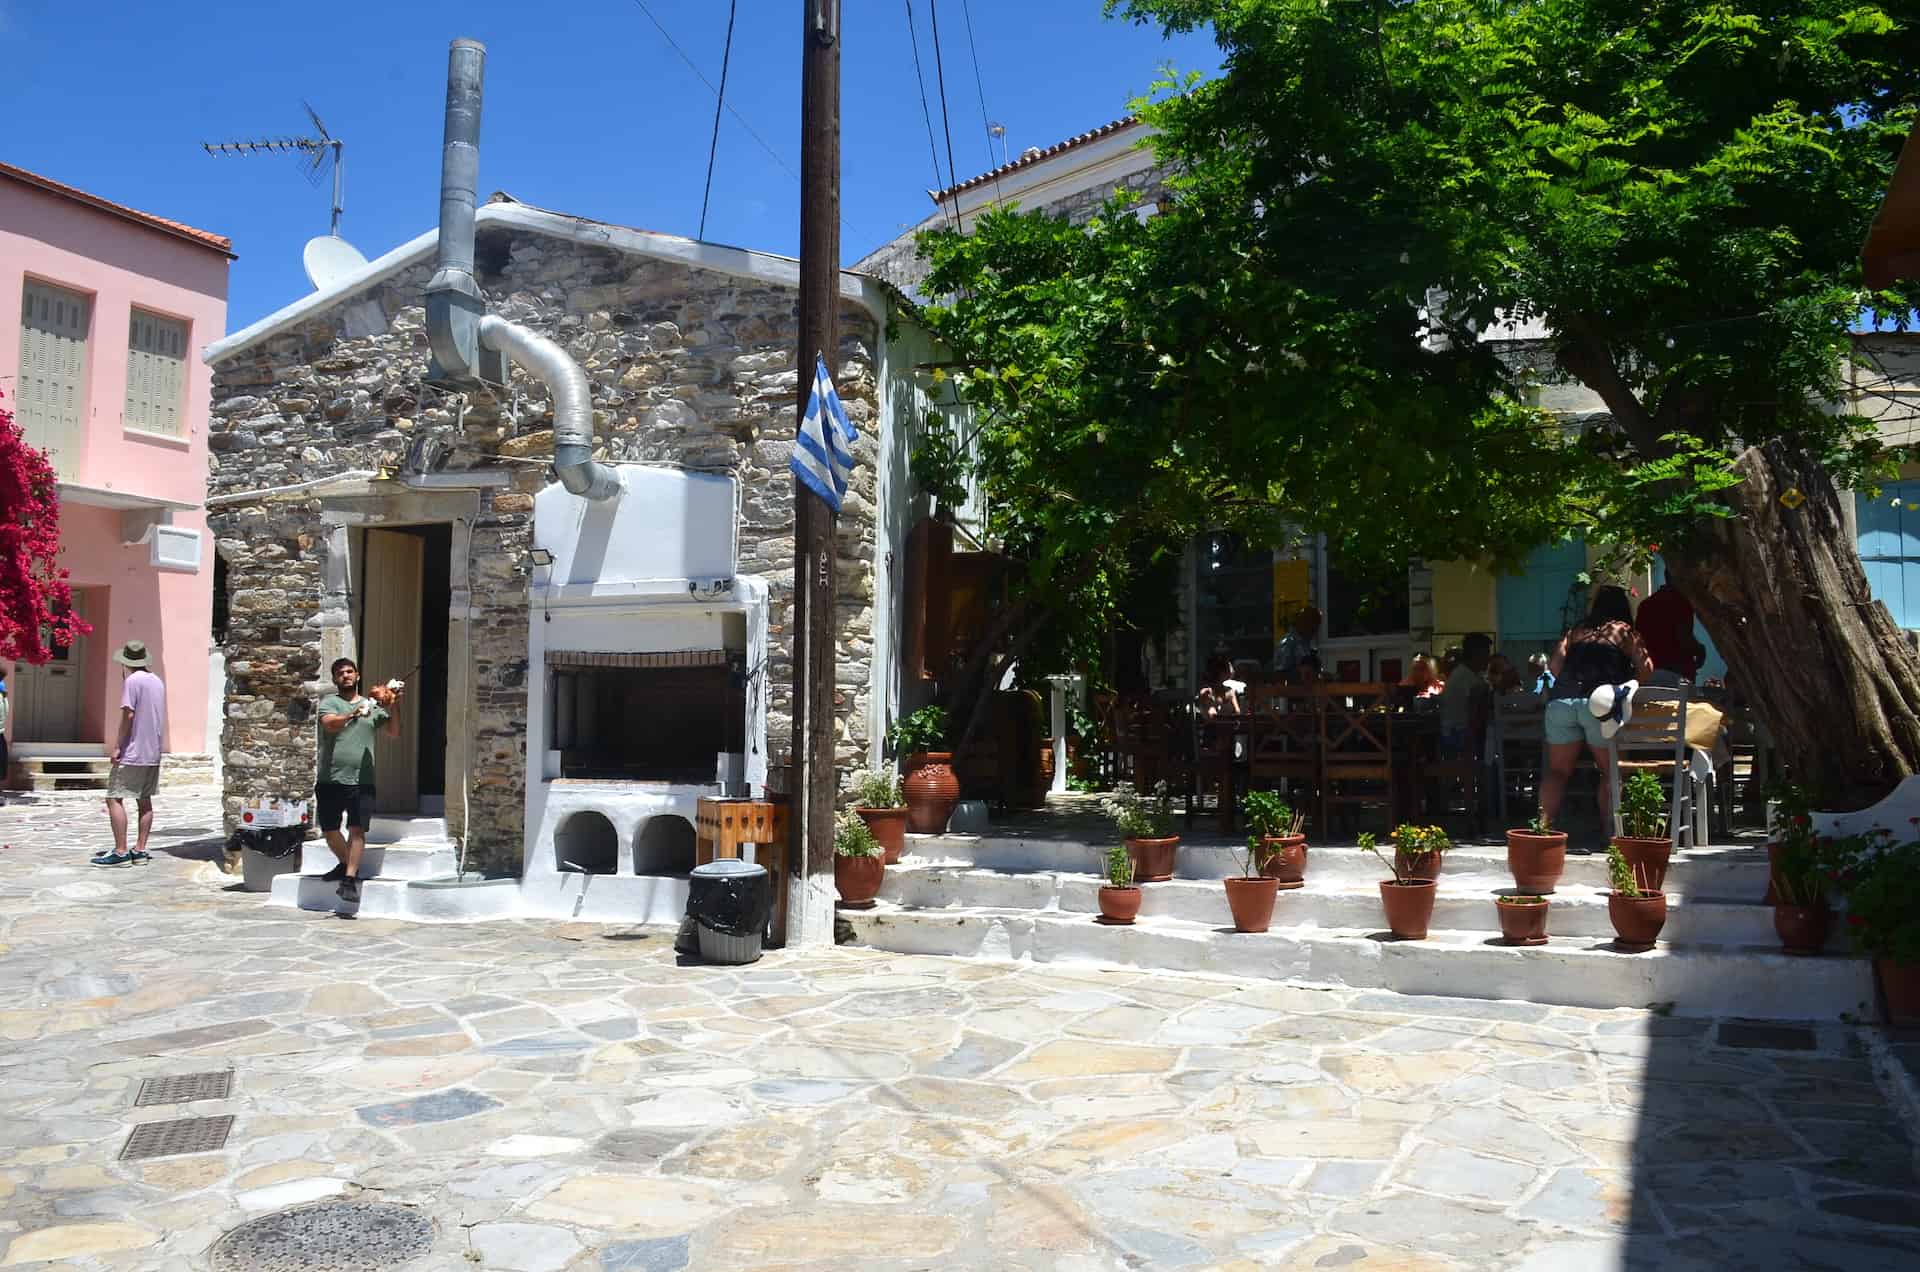 Restaurant on the square in Halki, Naxos, Greece